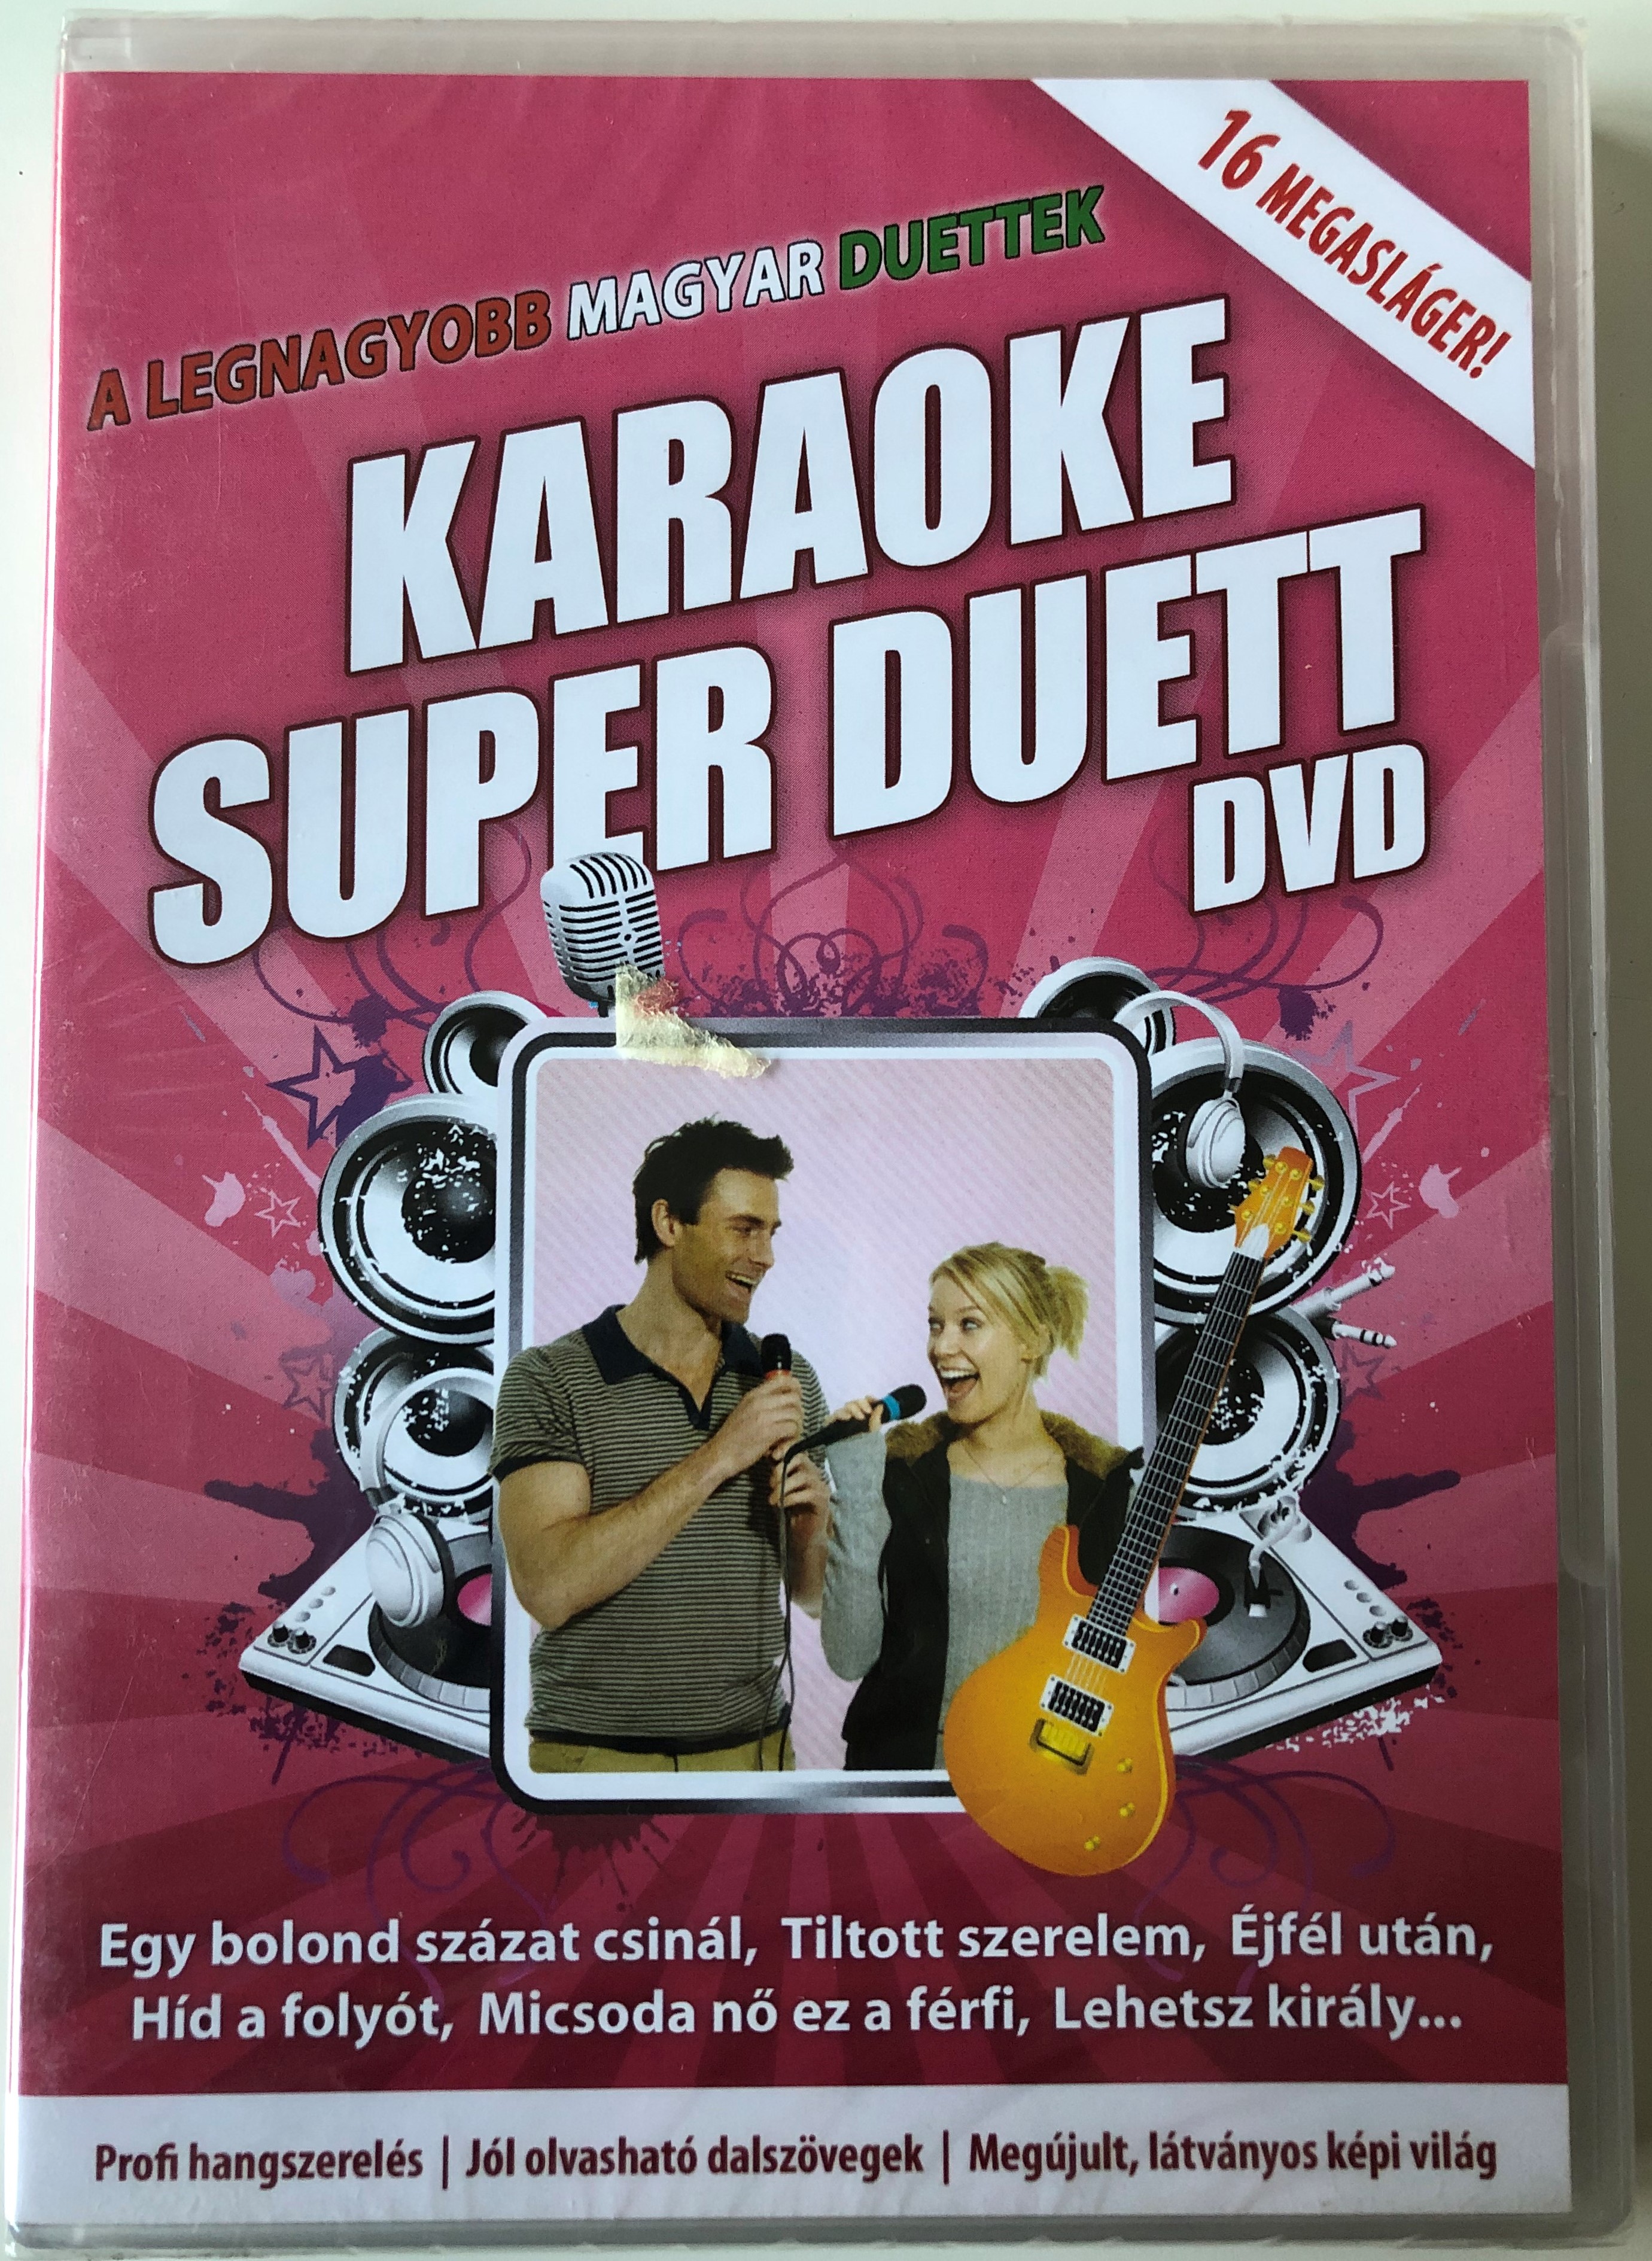 Karaoke Super Duett DVD 2010 A Legnagyobb Magyar Duettek 1